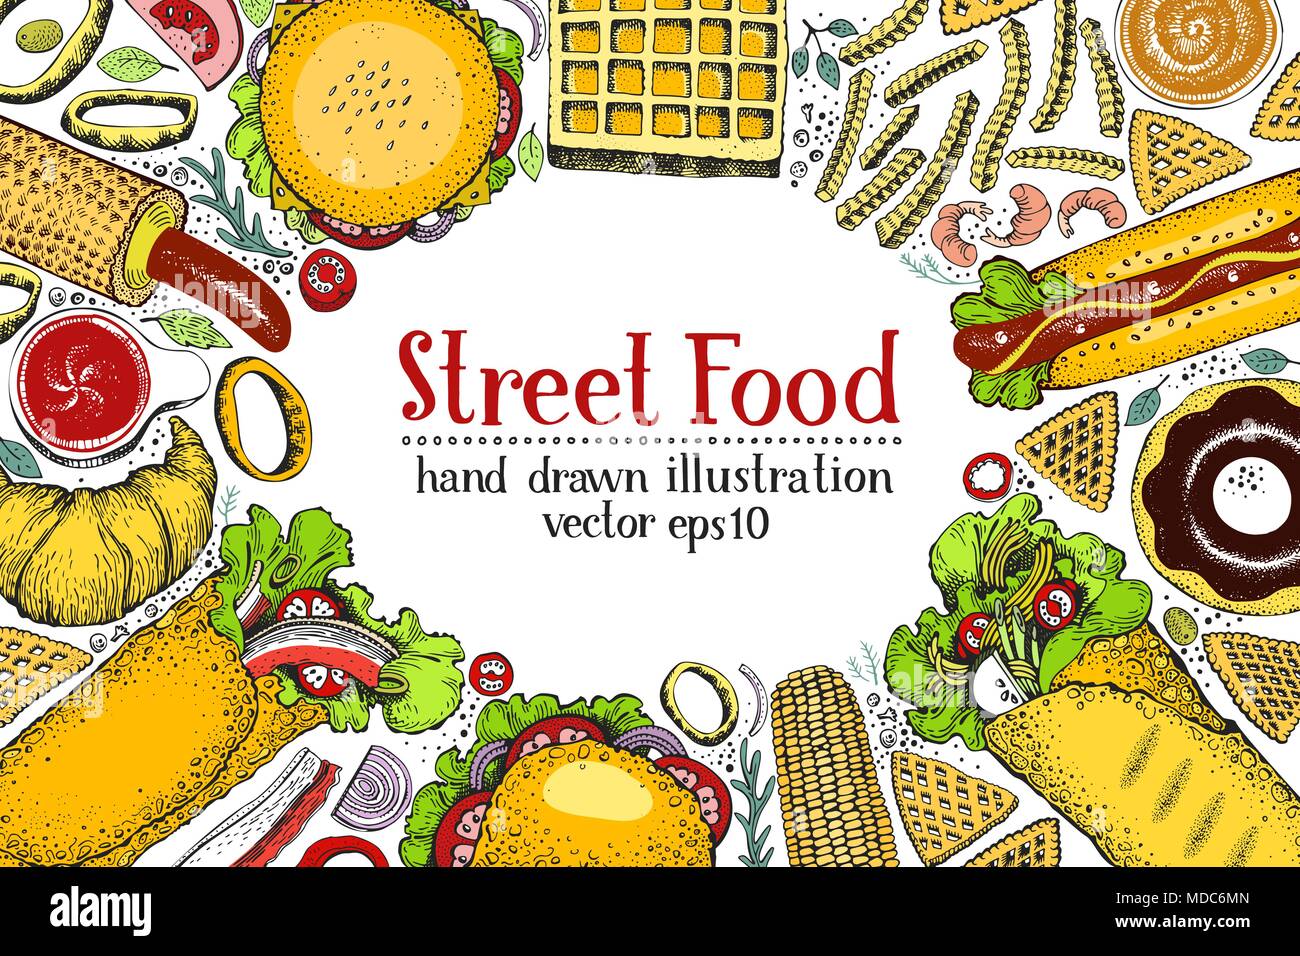 Với thức ăn đường phố đa dạng và phong phú, bạn sẽ có những trải nghiệm ẩm thực vô cùng thú vị. Hãy xem hình ảnh liên quan để khám phá những món ăn đường phố tuyệt vời. 